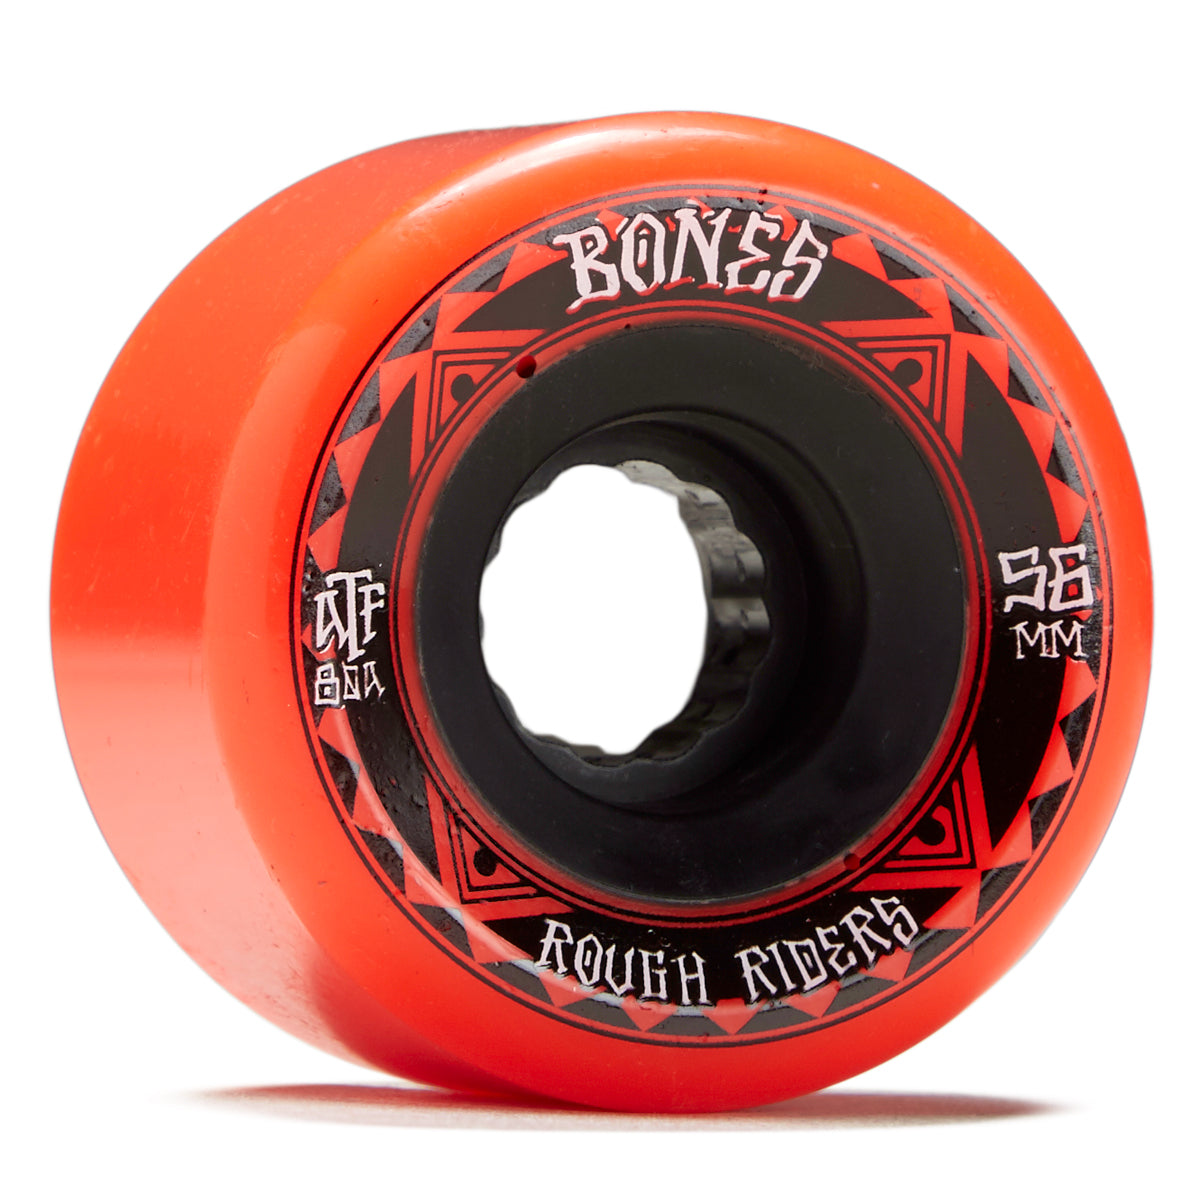 Bones Rough Riders Runners Skateboard Wheels - Red - 56mm image 1